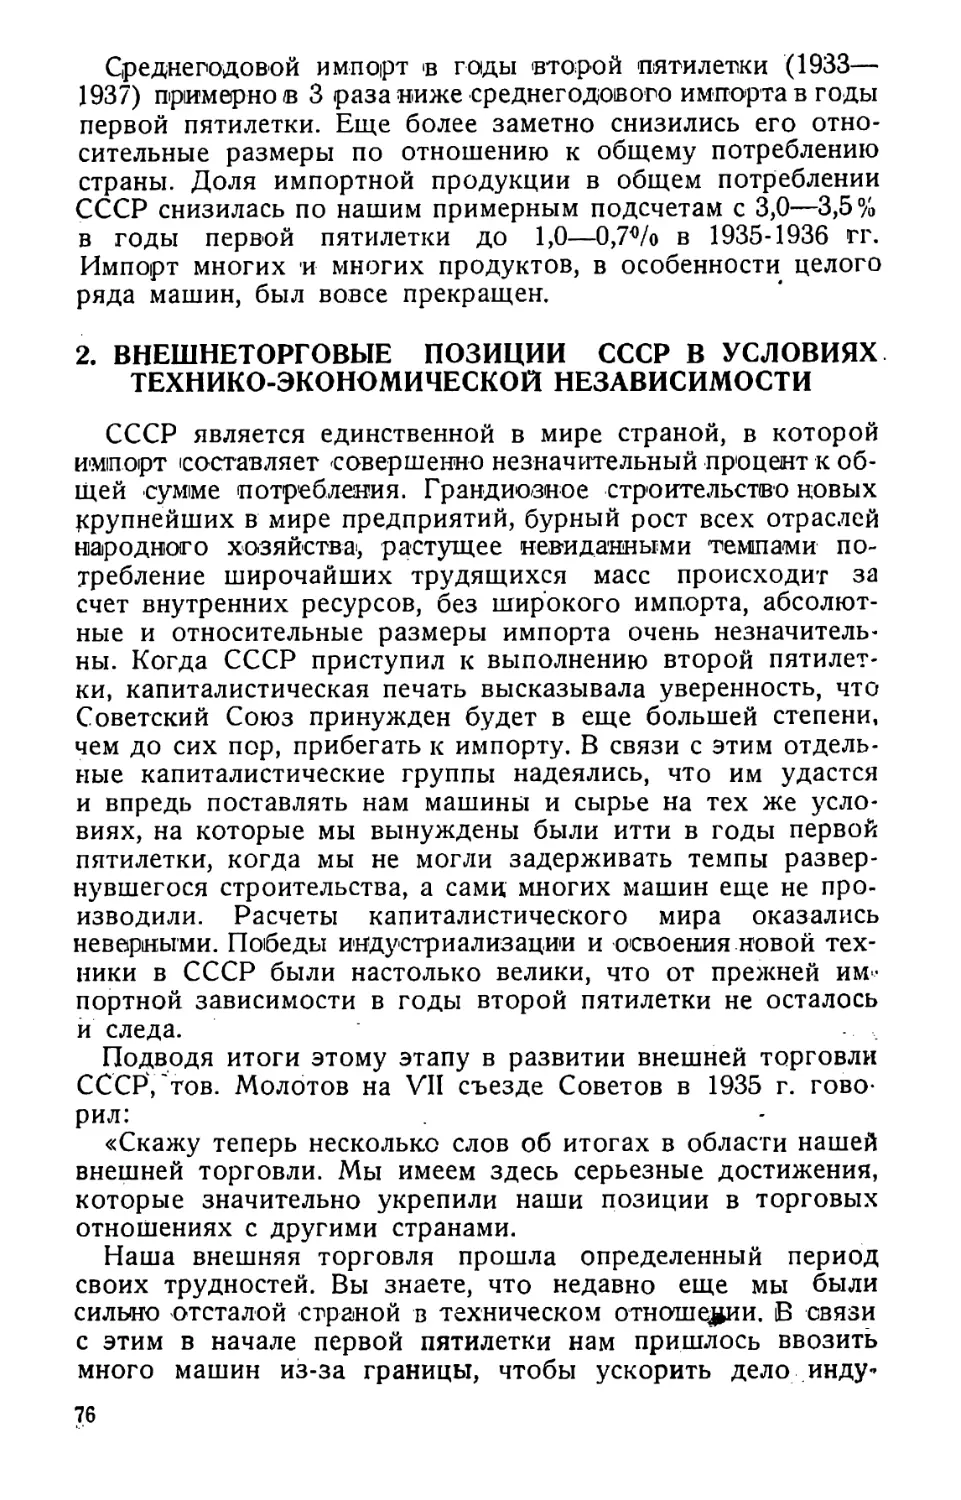 2. Внешнеторговые позиции СССР в условиях технико-экономической независимости